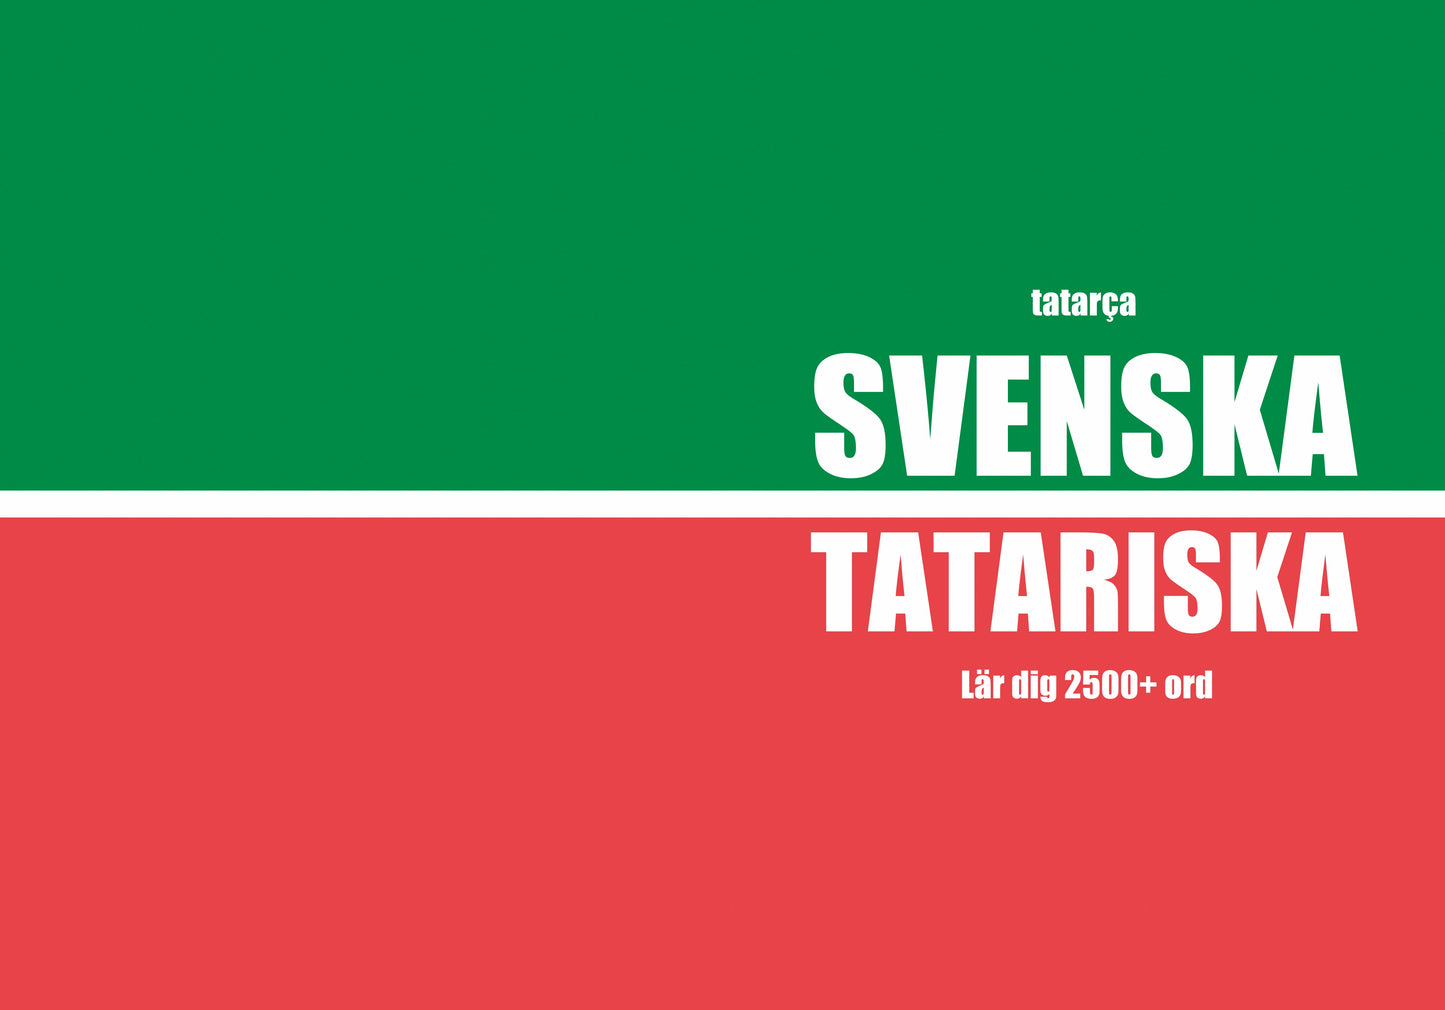 Svenska-tatariska anteckningsbok att fylla i